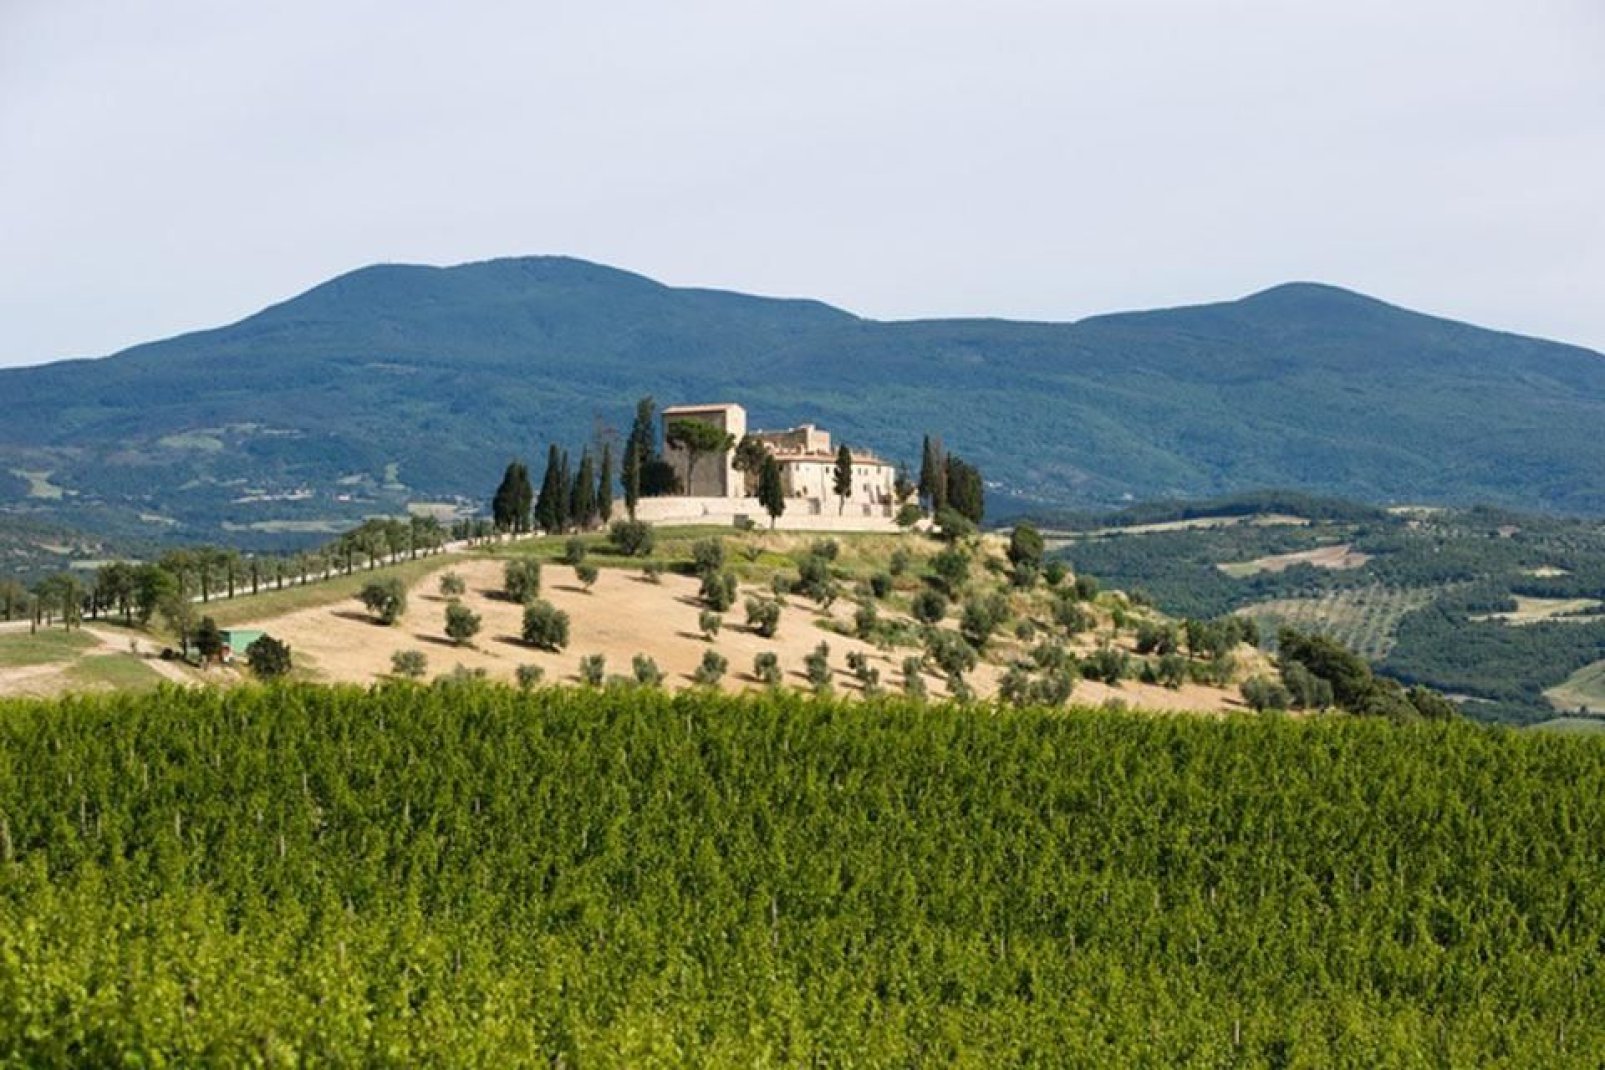 Il territorio di Siena possiede numerose ville rinascimentali e castelli, costruite nel tempo dai nobili del luogo